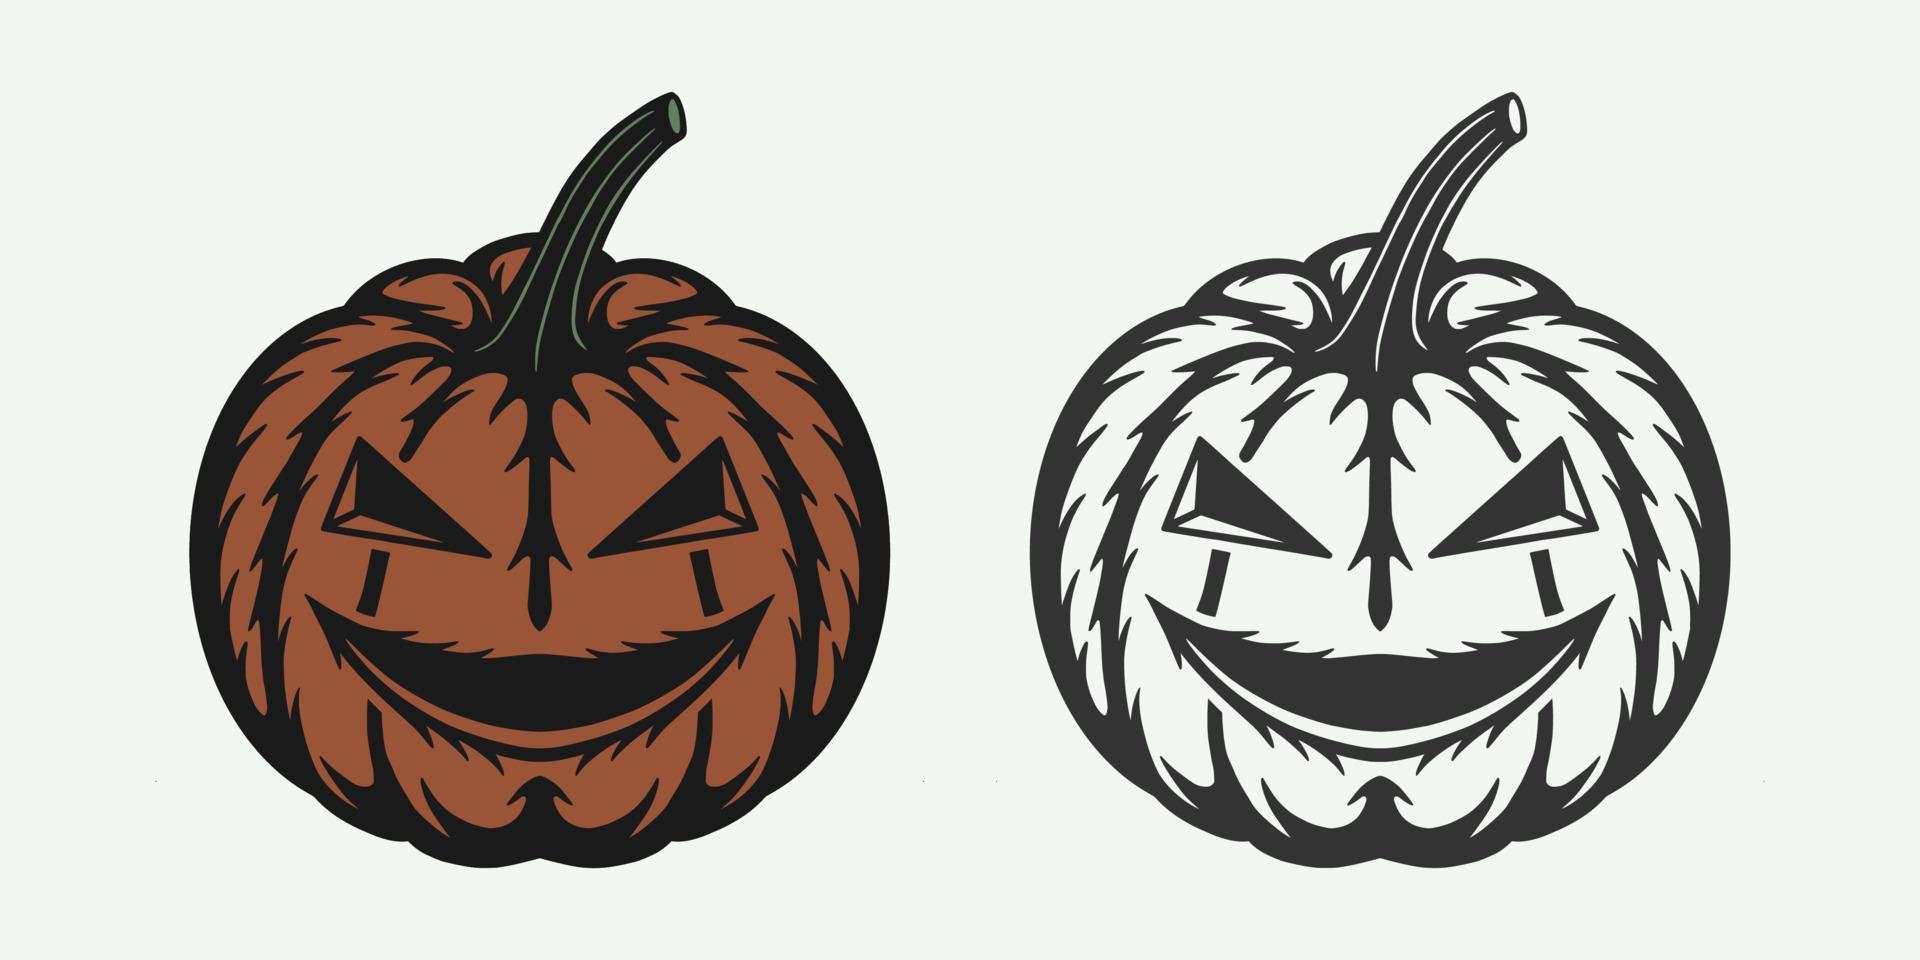 abóbora assustadora de halloween de xilogravura retrô vintage. pode ser usado como emblema, logotipo, crachá, etiqueta. marca, pôster ou impressão. arte gráfica monocromática. vetor. vetor